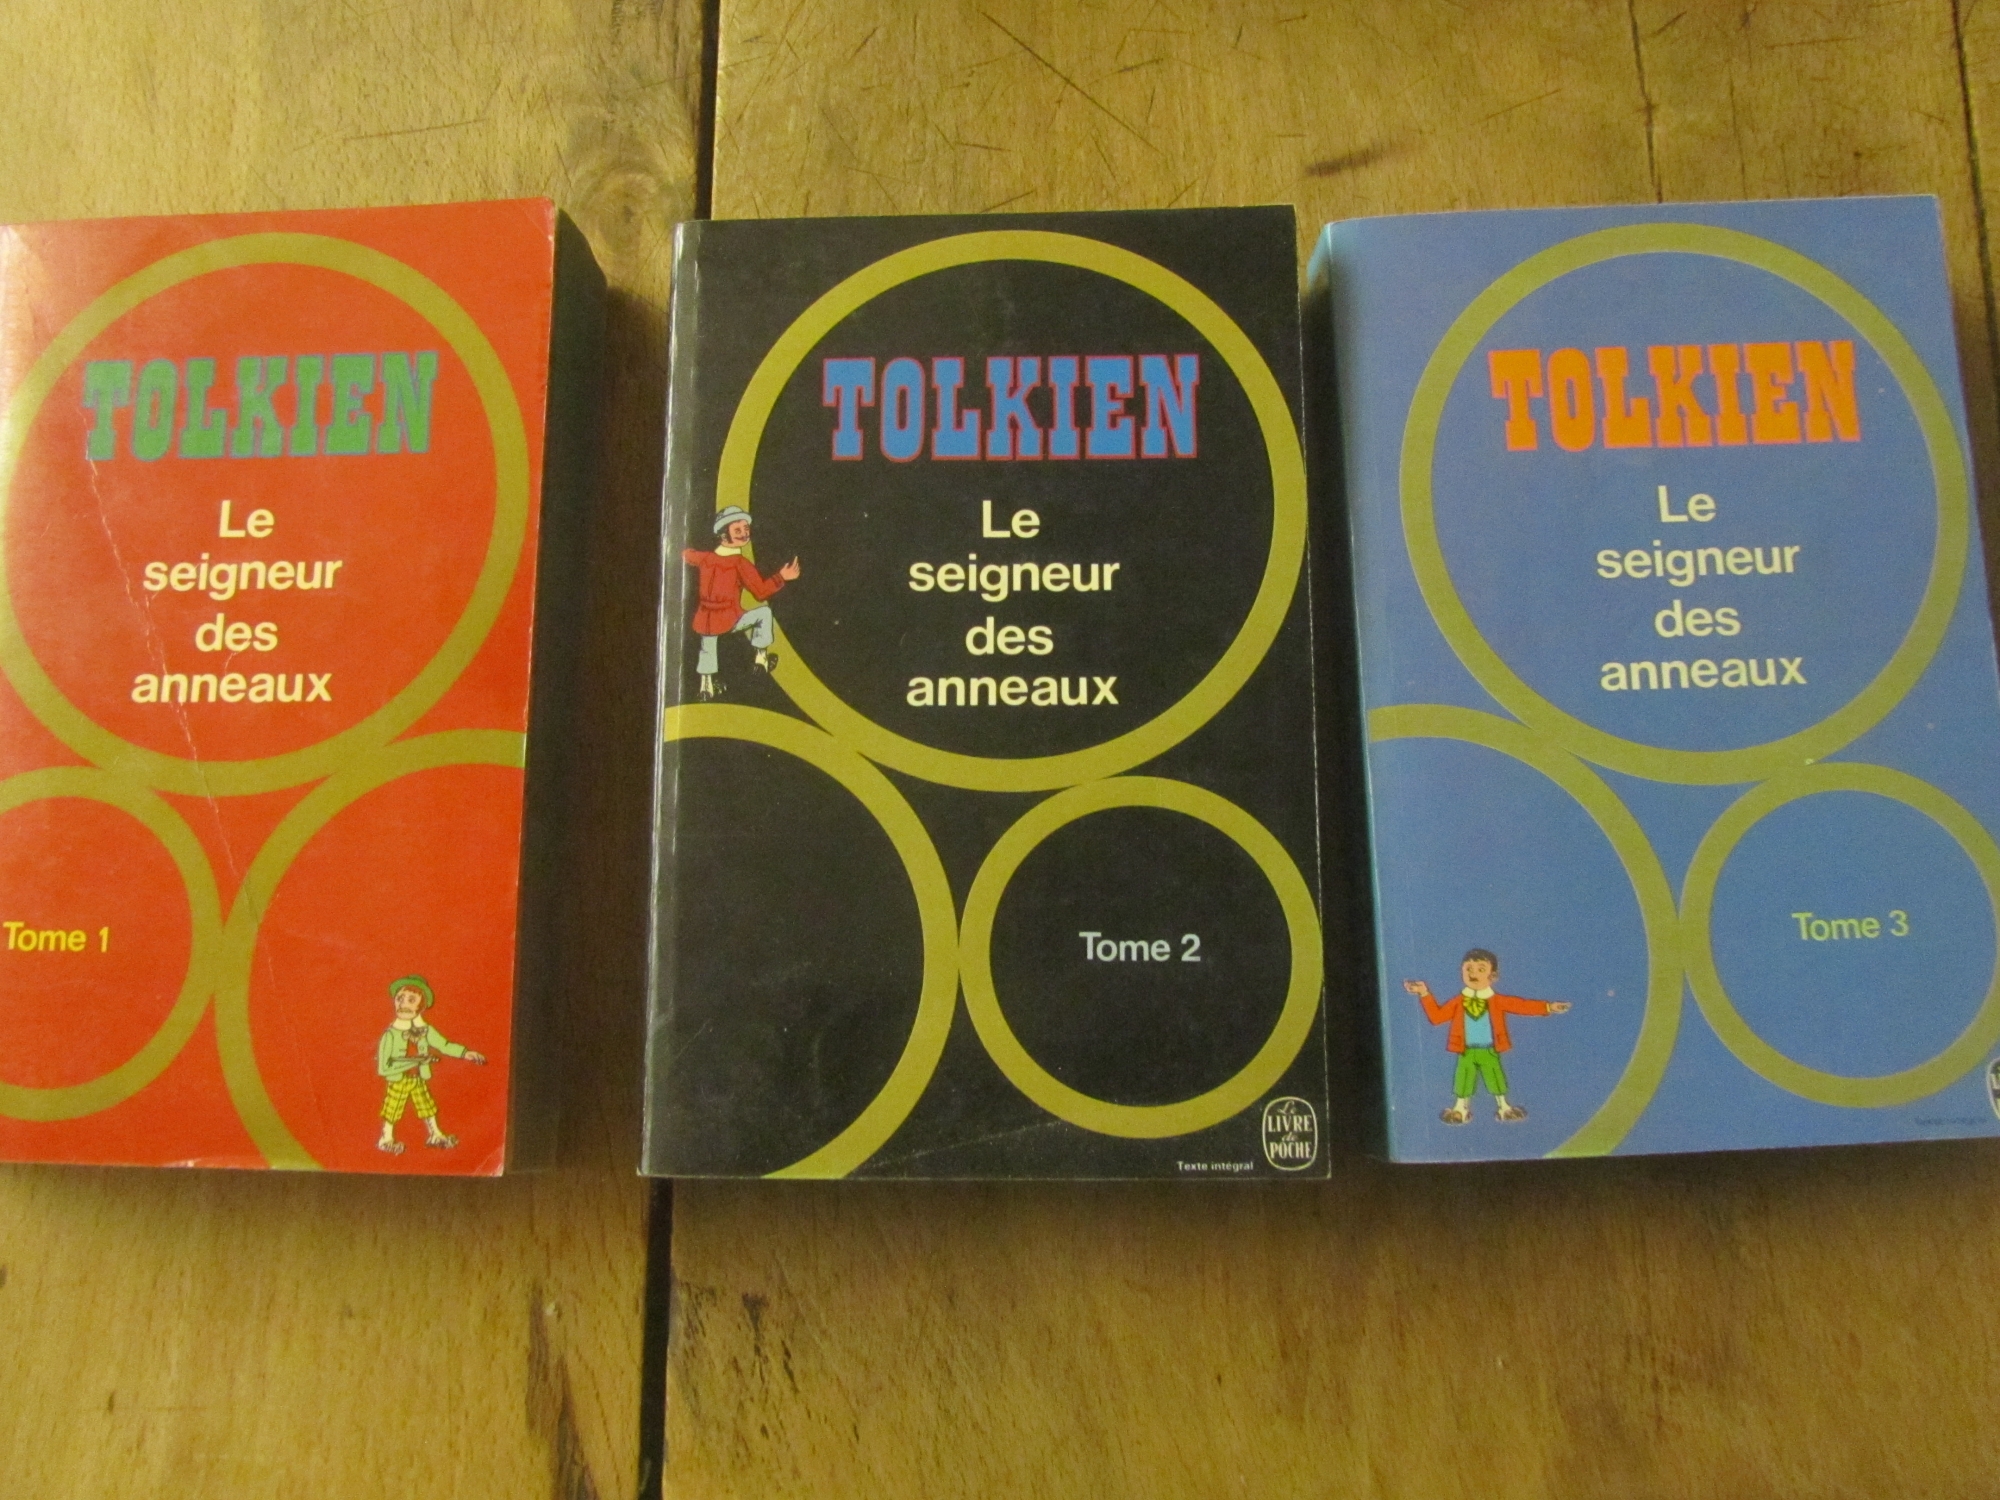 tolkien-le-seigneur-des-anneaux-3-volumes-le-livre-de-poche.jpg